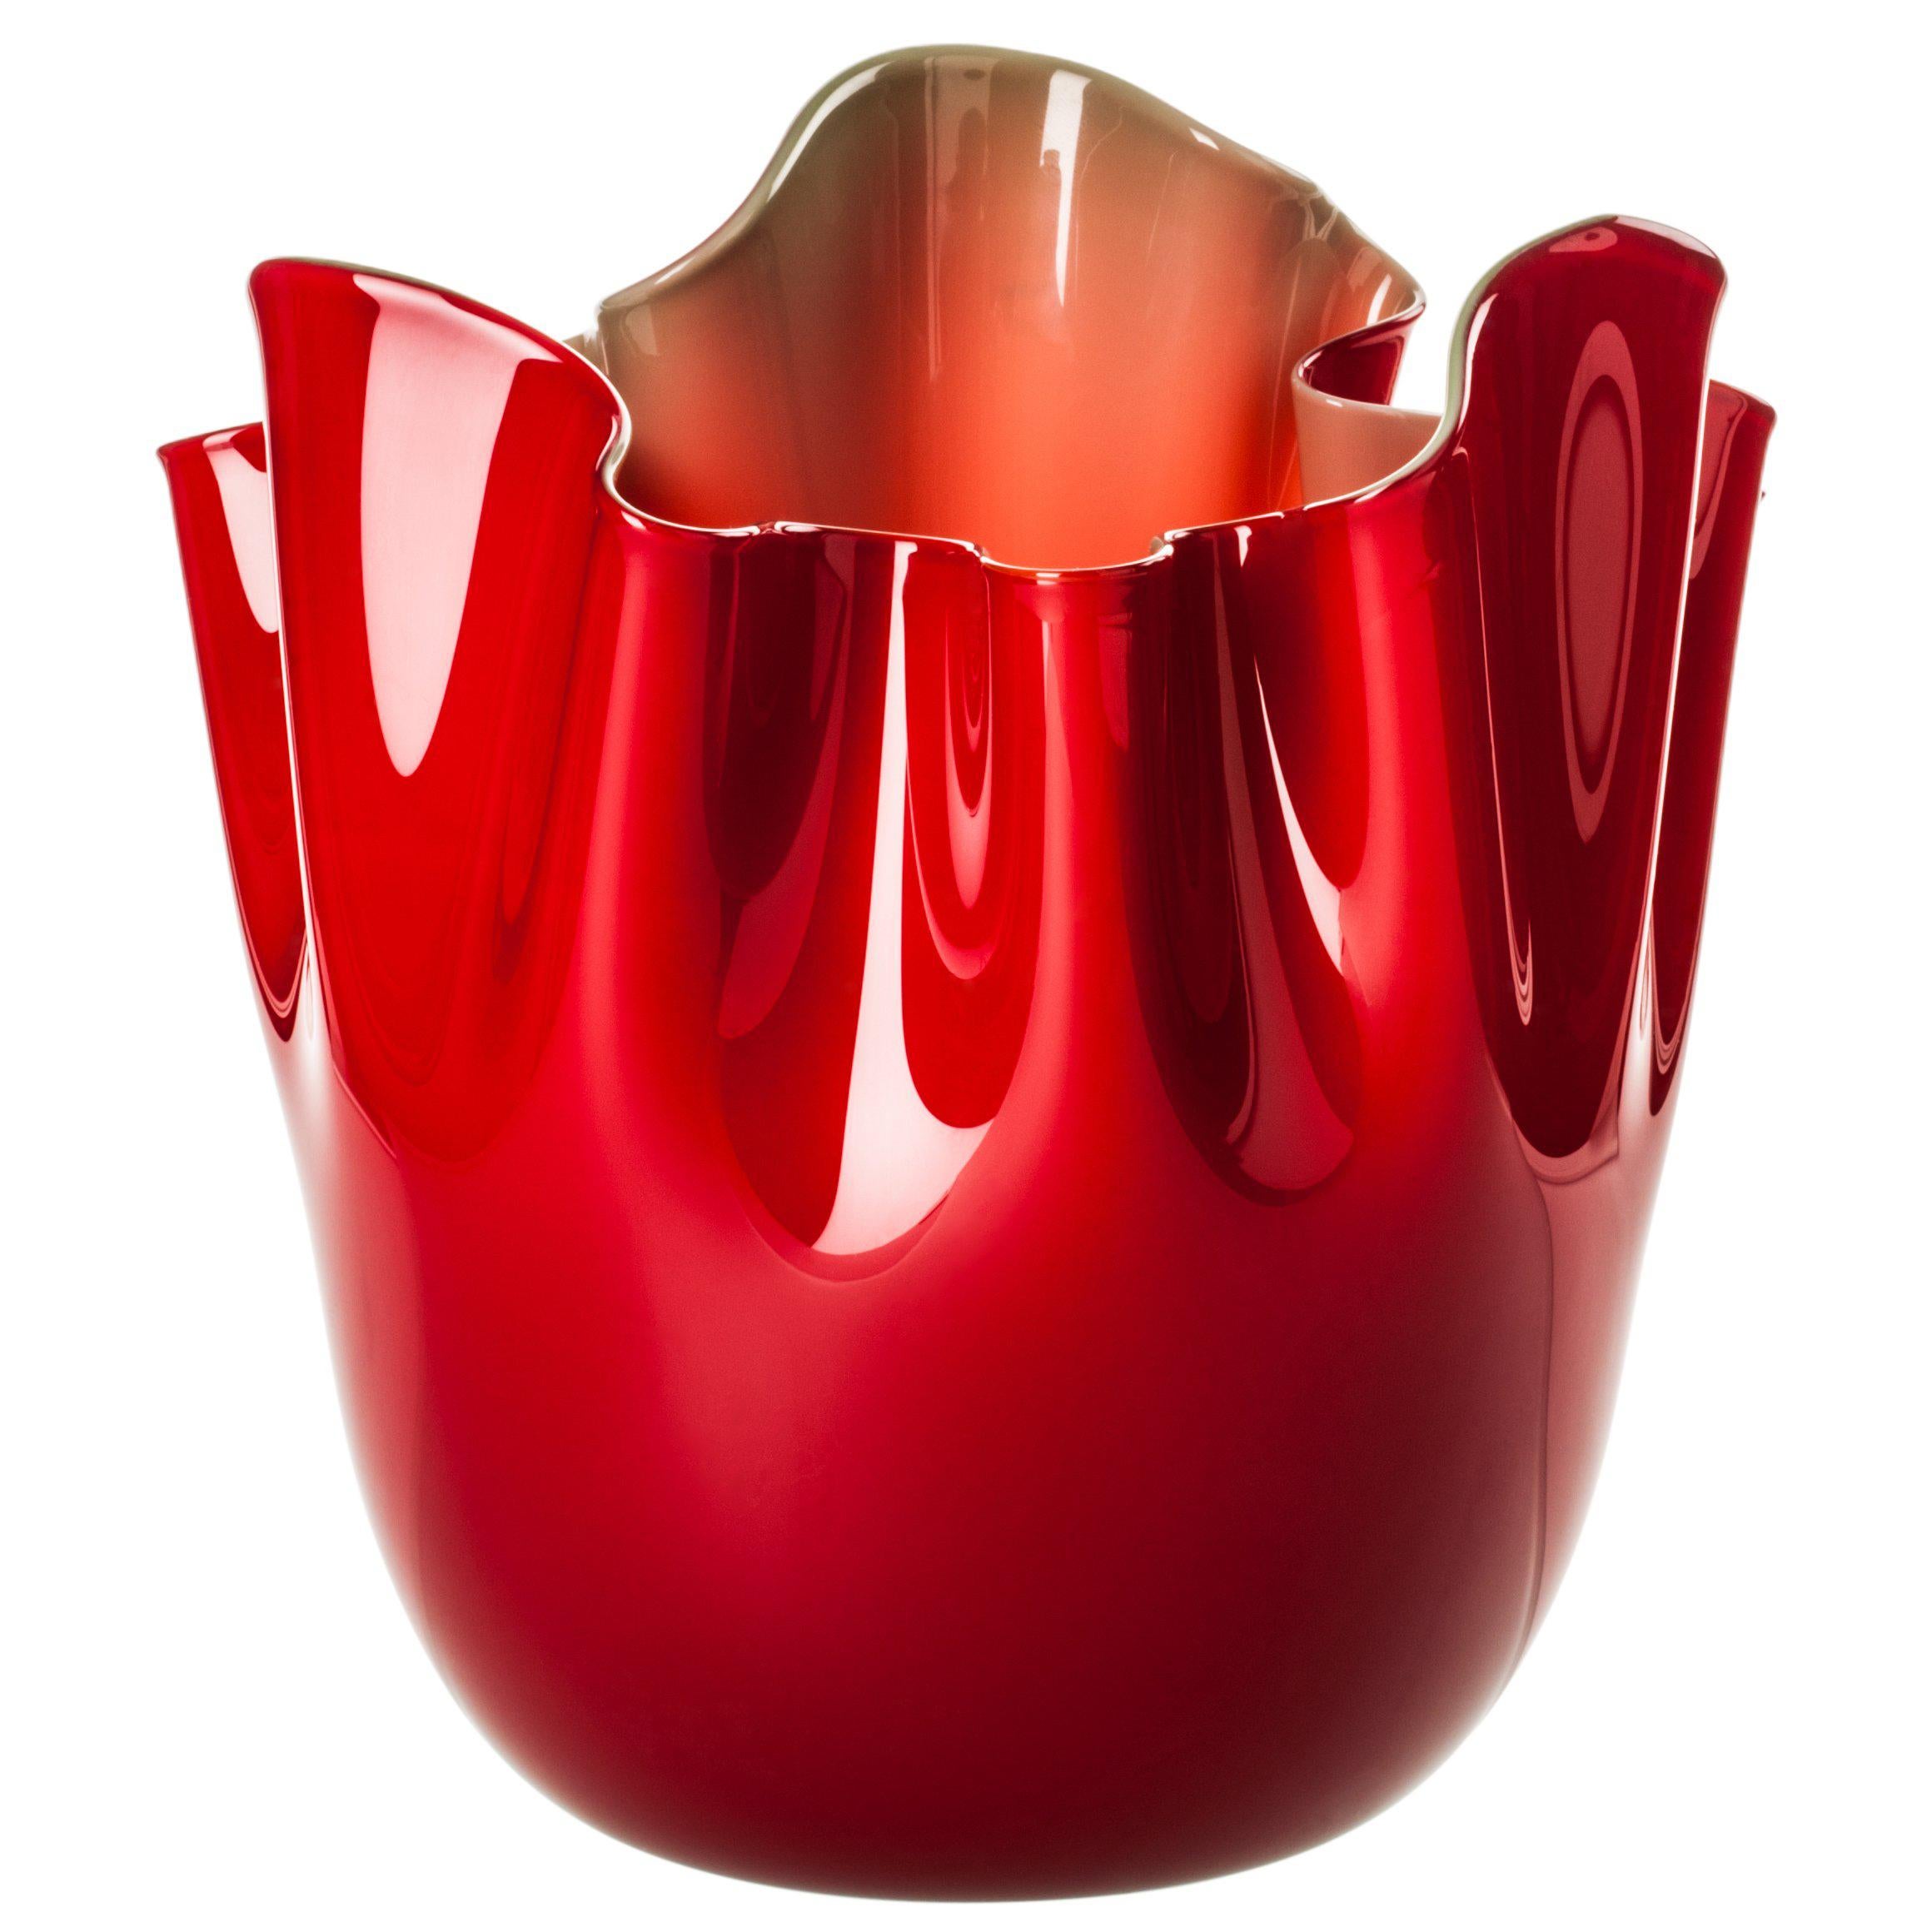 Fazzoletto Glass Vase in Red and Orange by Fulvio Bianconi & Paolo Venini